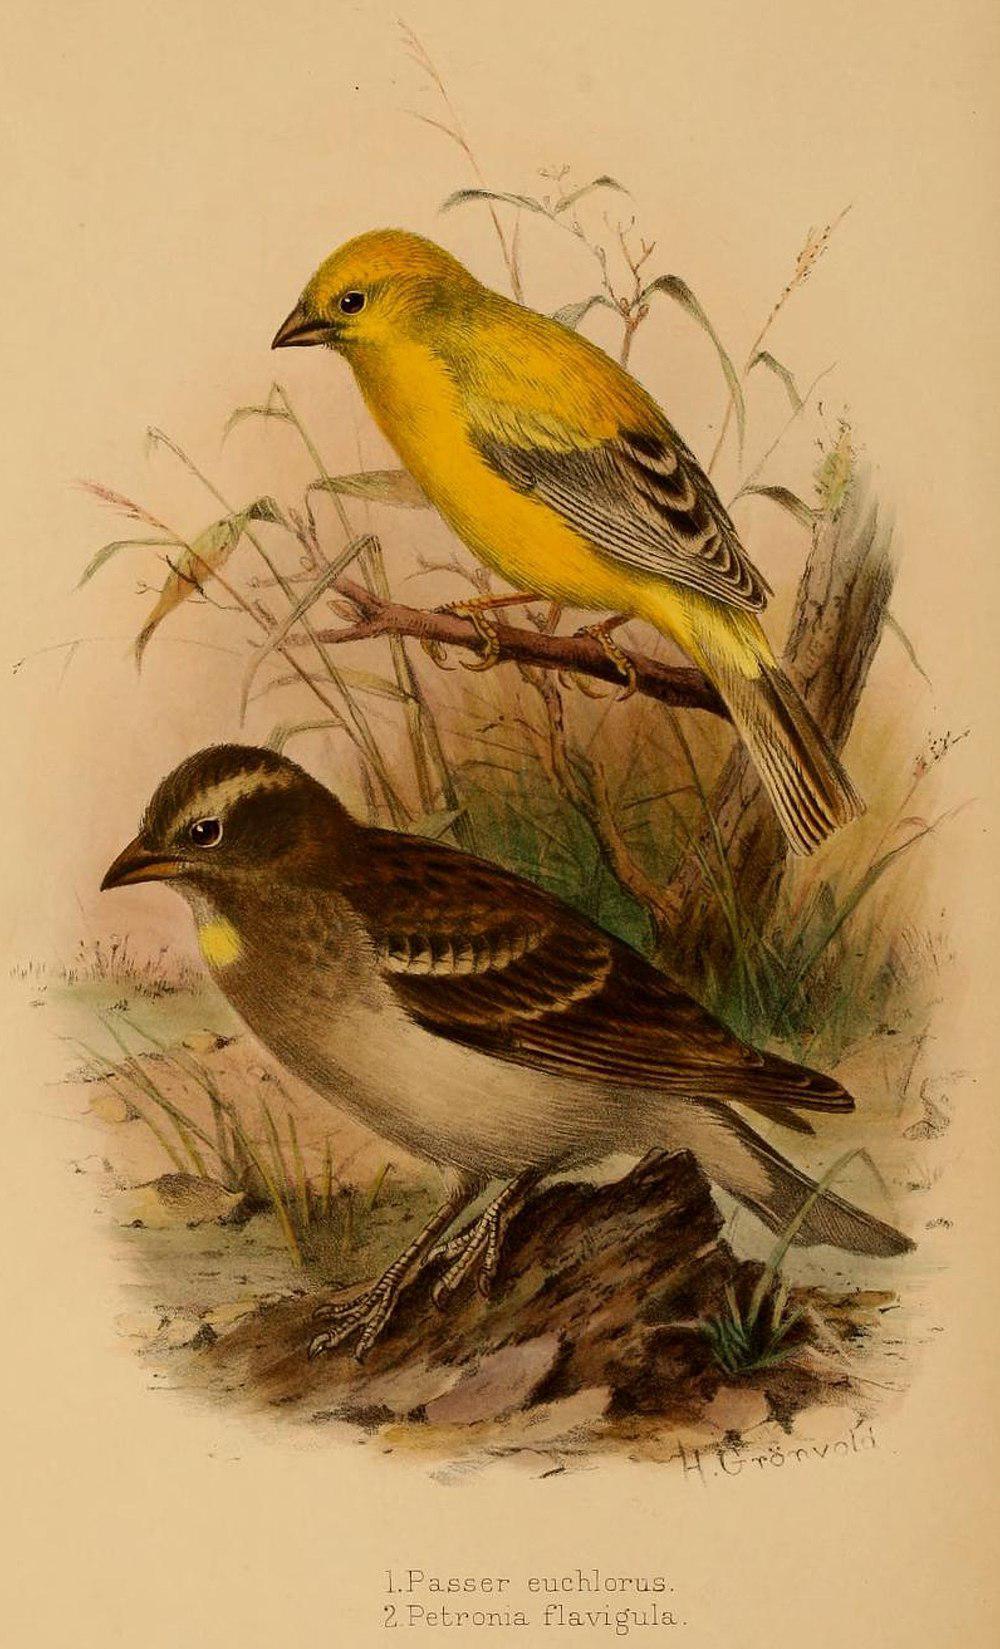 阿拉伯金麻雀 / Arabian Golden Sparrow / Passer euchlorus